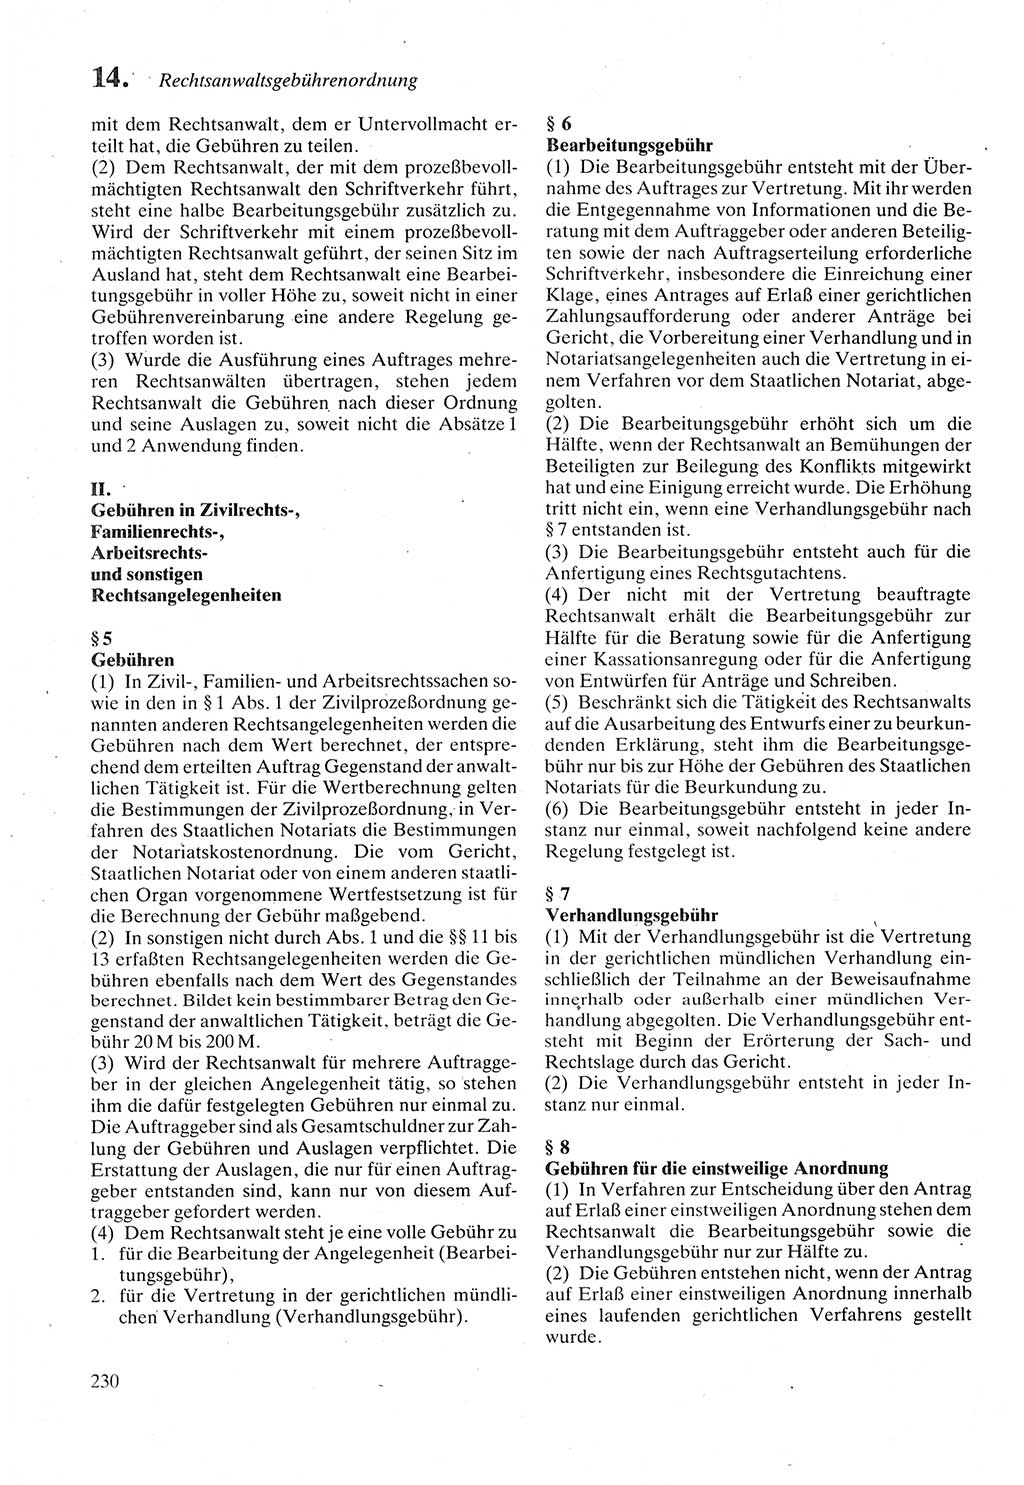 Strafprozeßordnung (StPO) der Deutschen Demokratischen Republik (DDR) sowie angrenzende Gesetze und Bestimmungen 1987, Seite 230 (StPO DDR Ges. Best. 1987, S. 230)